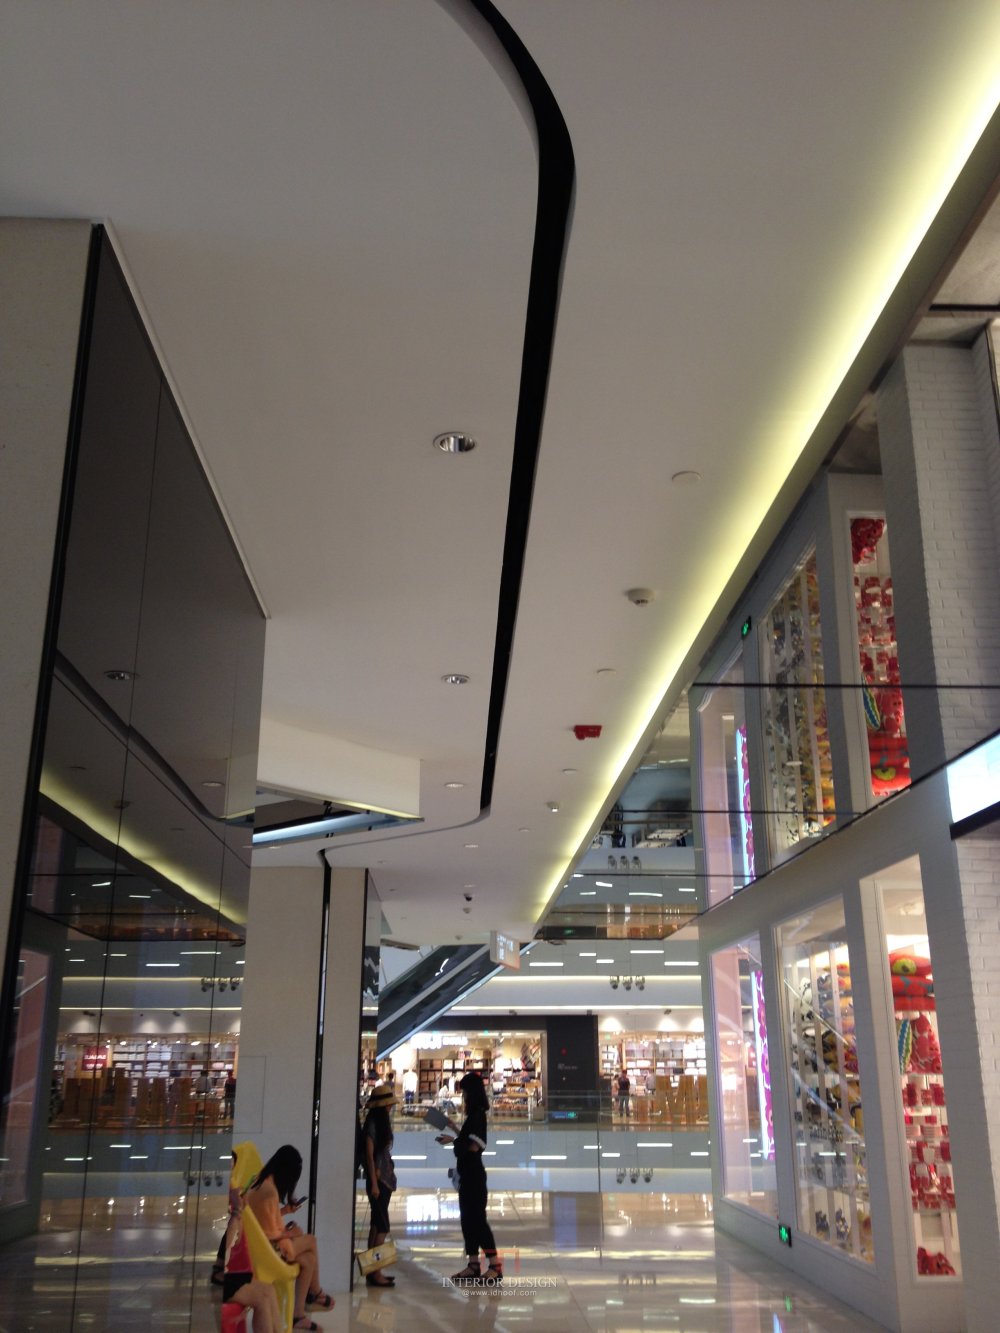 上海环贸Iapm购物商场---内部及细节自拍图_IMG_2639.JPG